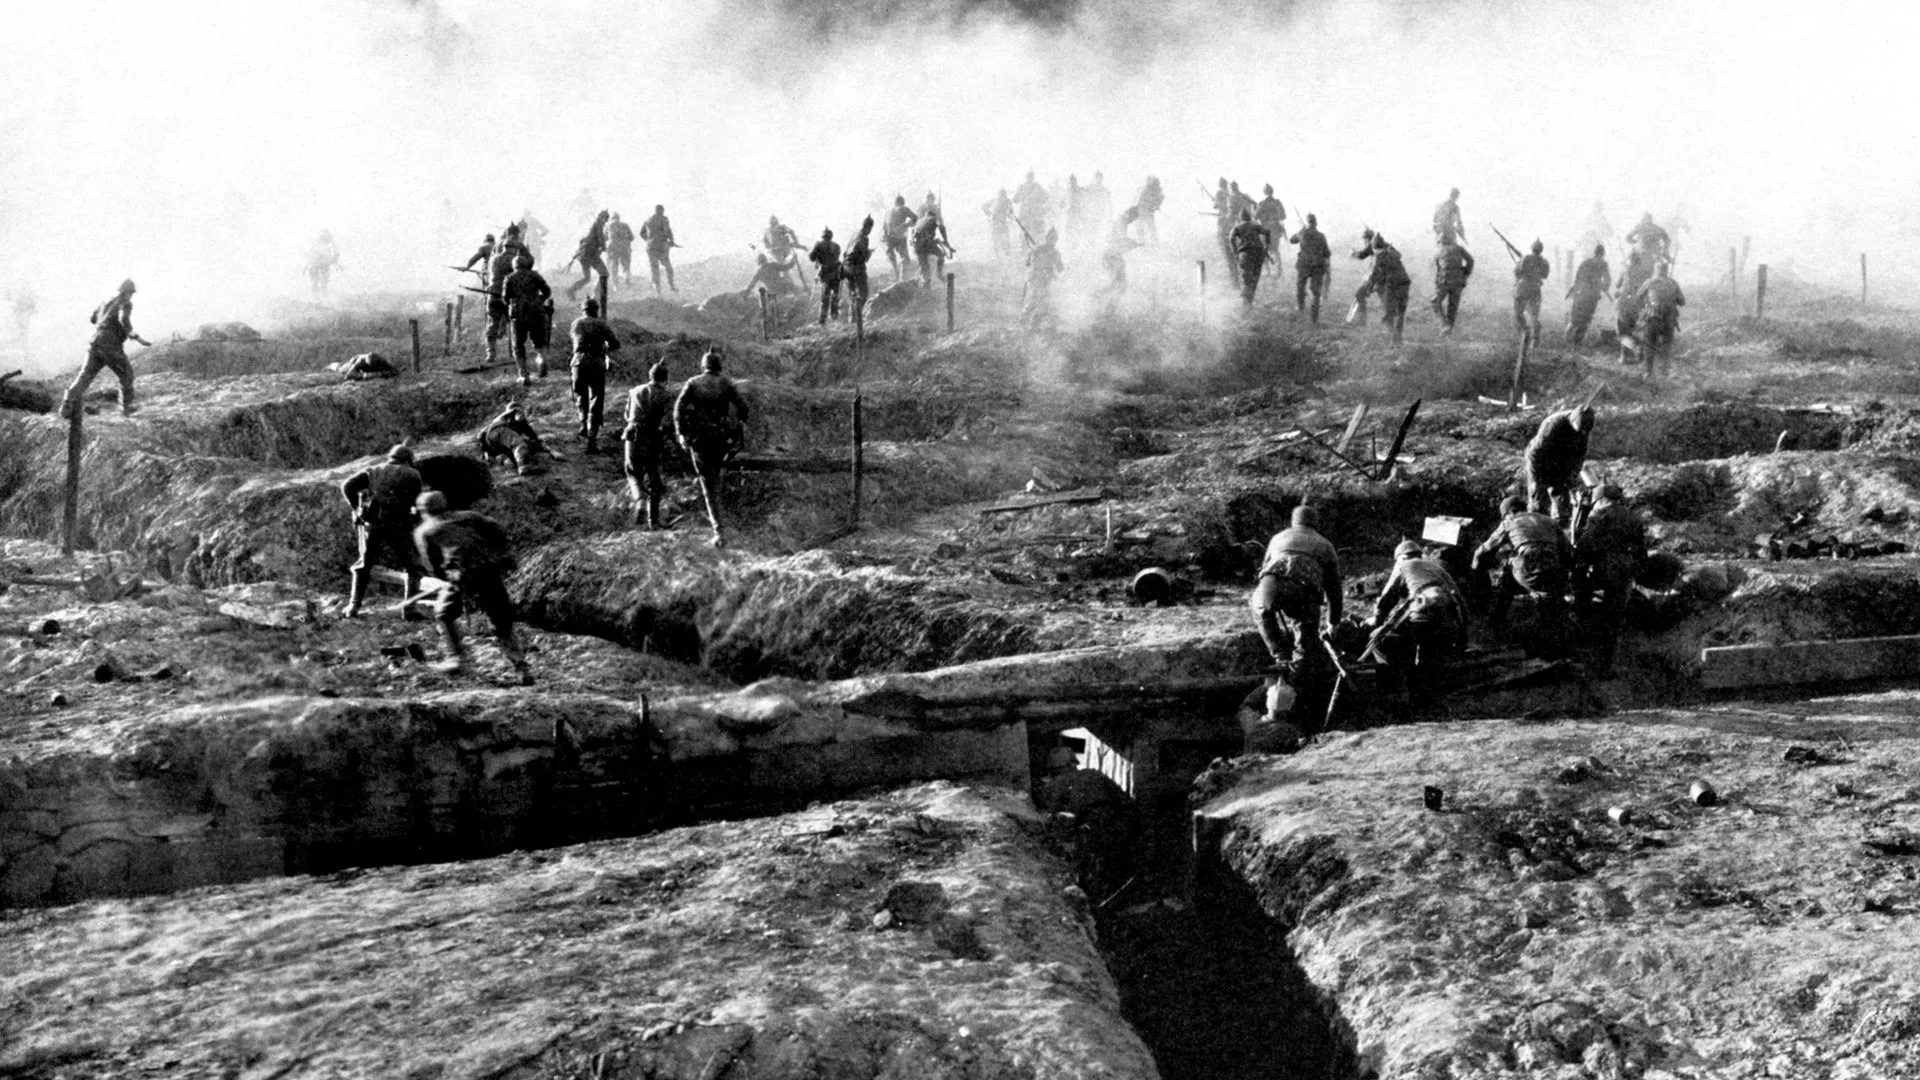 Les ferotges batalles del 1915 i 1916 van provocar 600.000 morts. La Primera Guerra Mundial es va decidir a les trinxeres